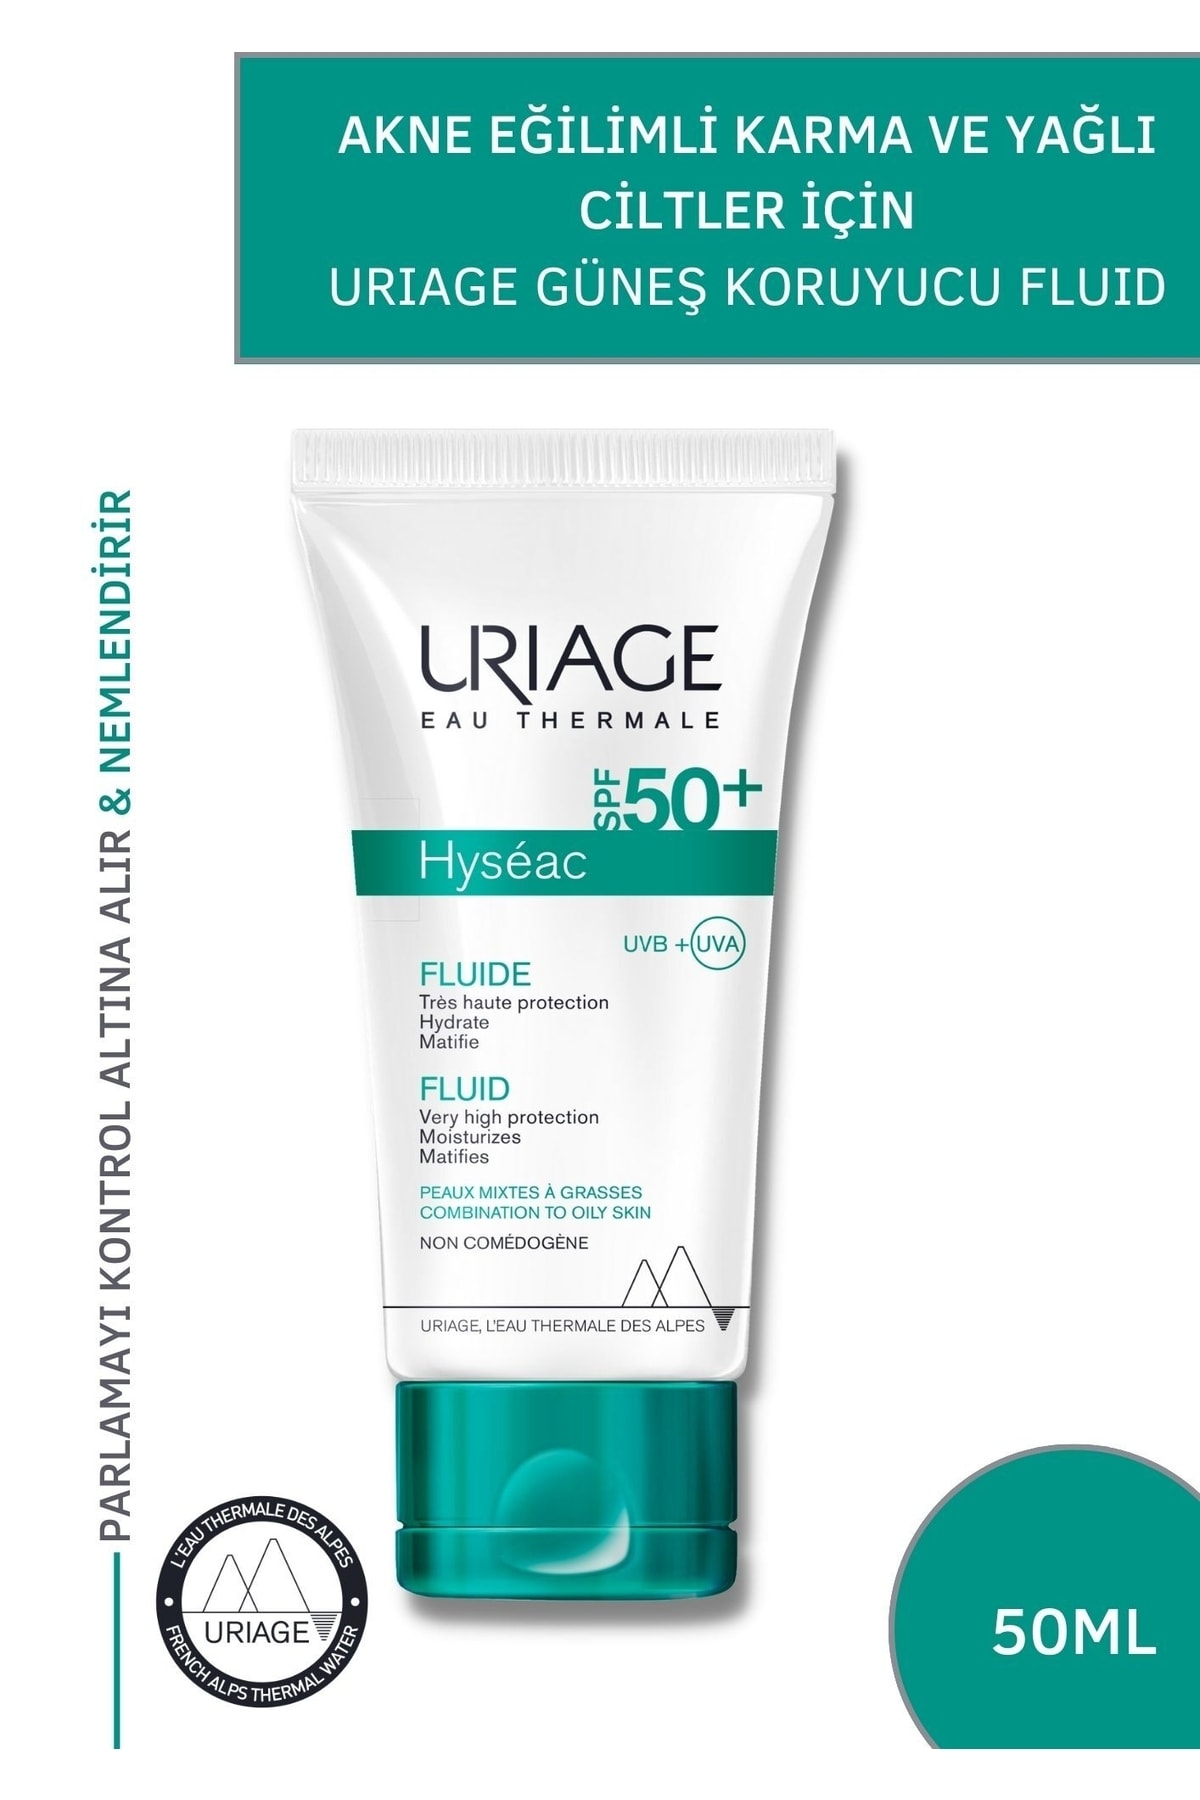 Uriage Hyseac Fluide Spf50+ 50 Ml Akne Eğilimli Karma Ve Yağlı Ciltlere Özel Güneş Koruyucu 50+